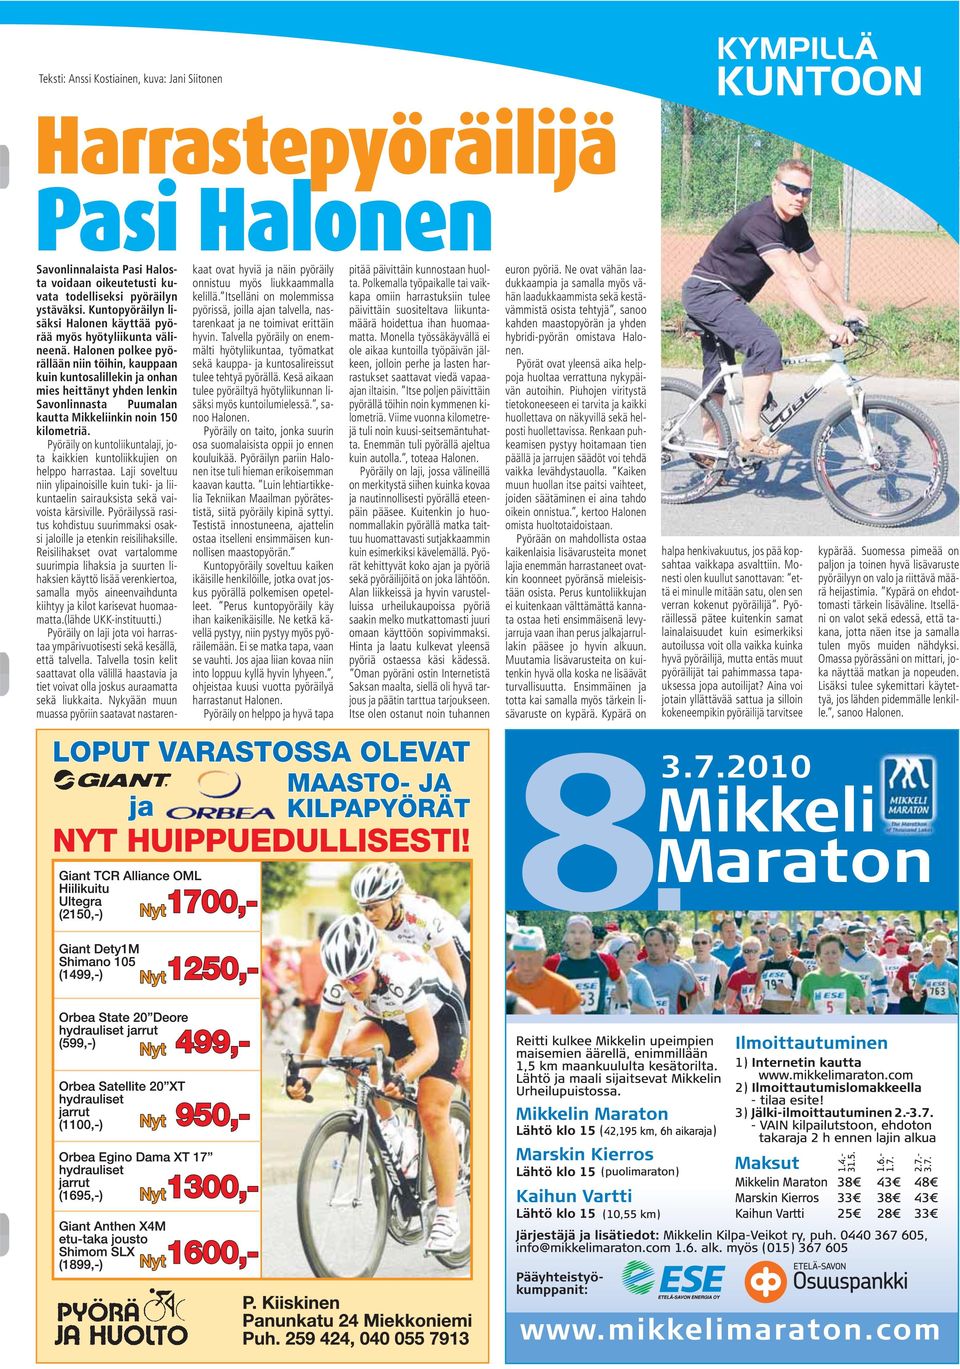 Halonen polkee pyörällään niin töihin, kauppaan kuin kuntosalillekin ja onhan mies heittänyt yhden lenkin Savonlinnasta Puumalan kautta Mikkeliinkin noin 150 kilometriä.